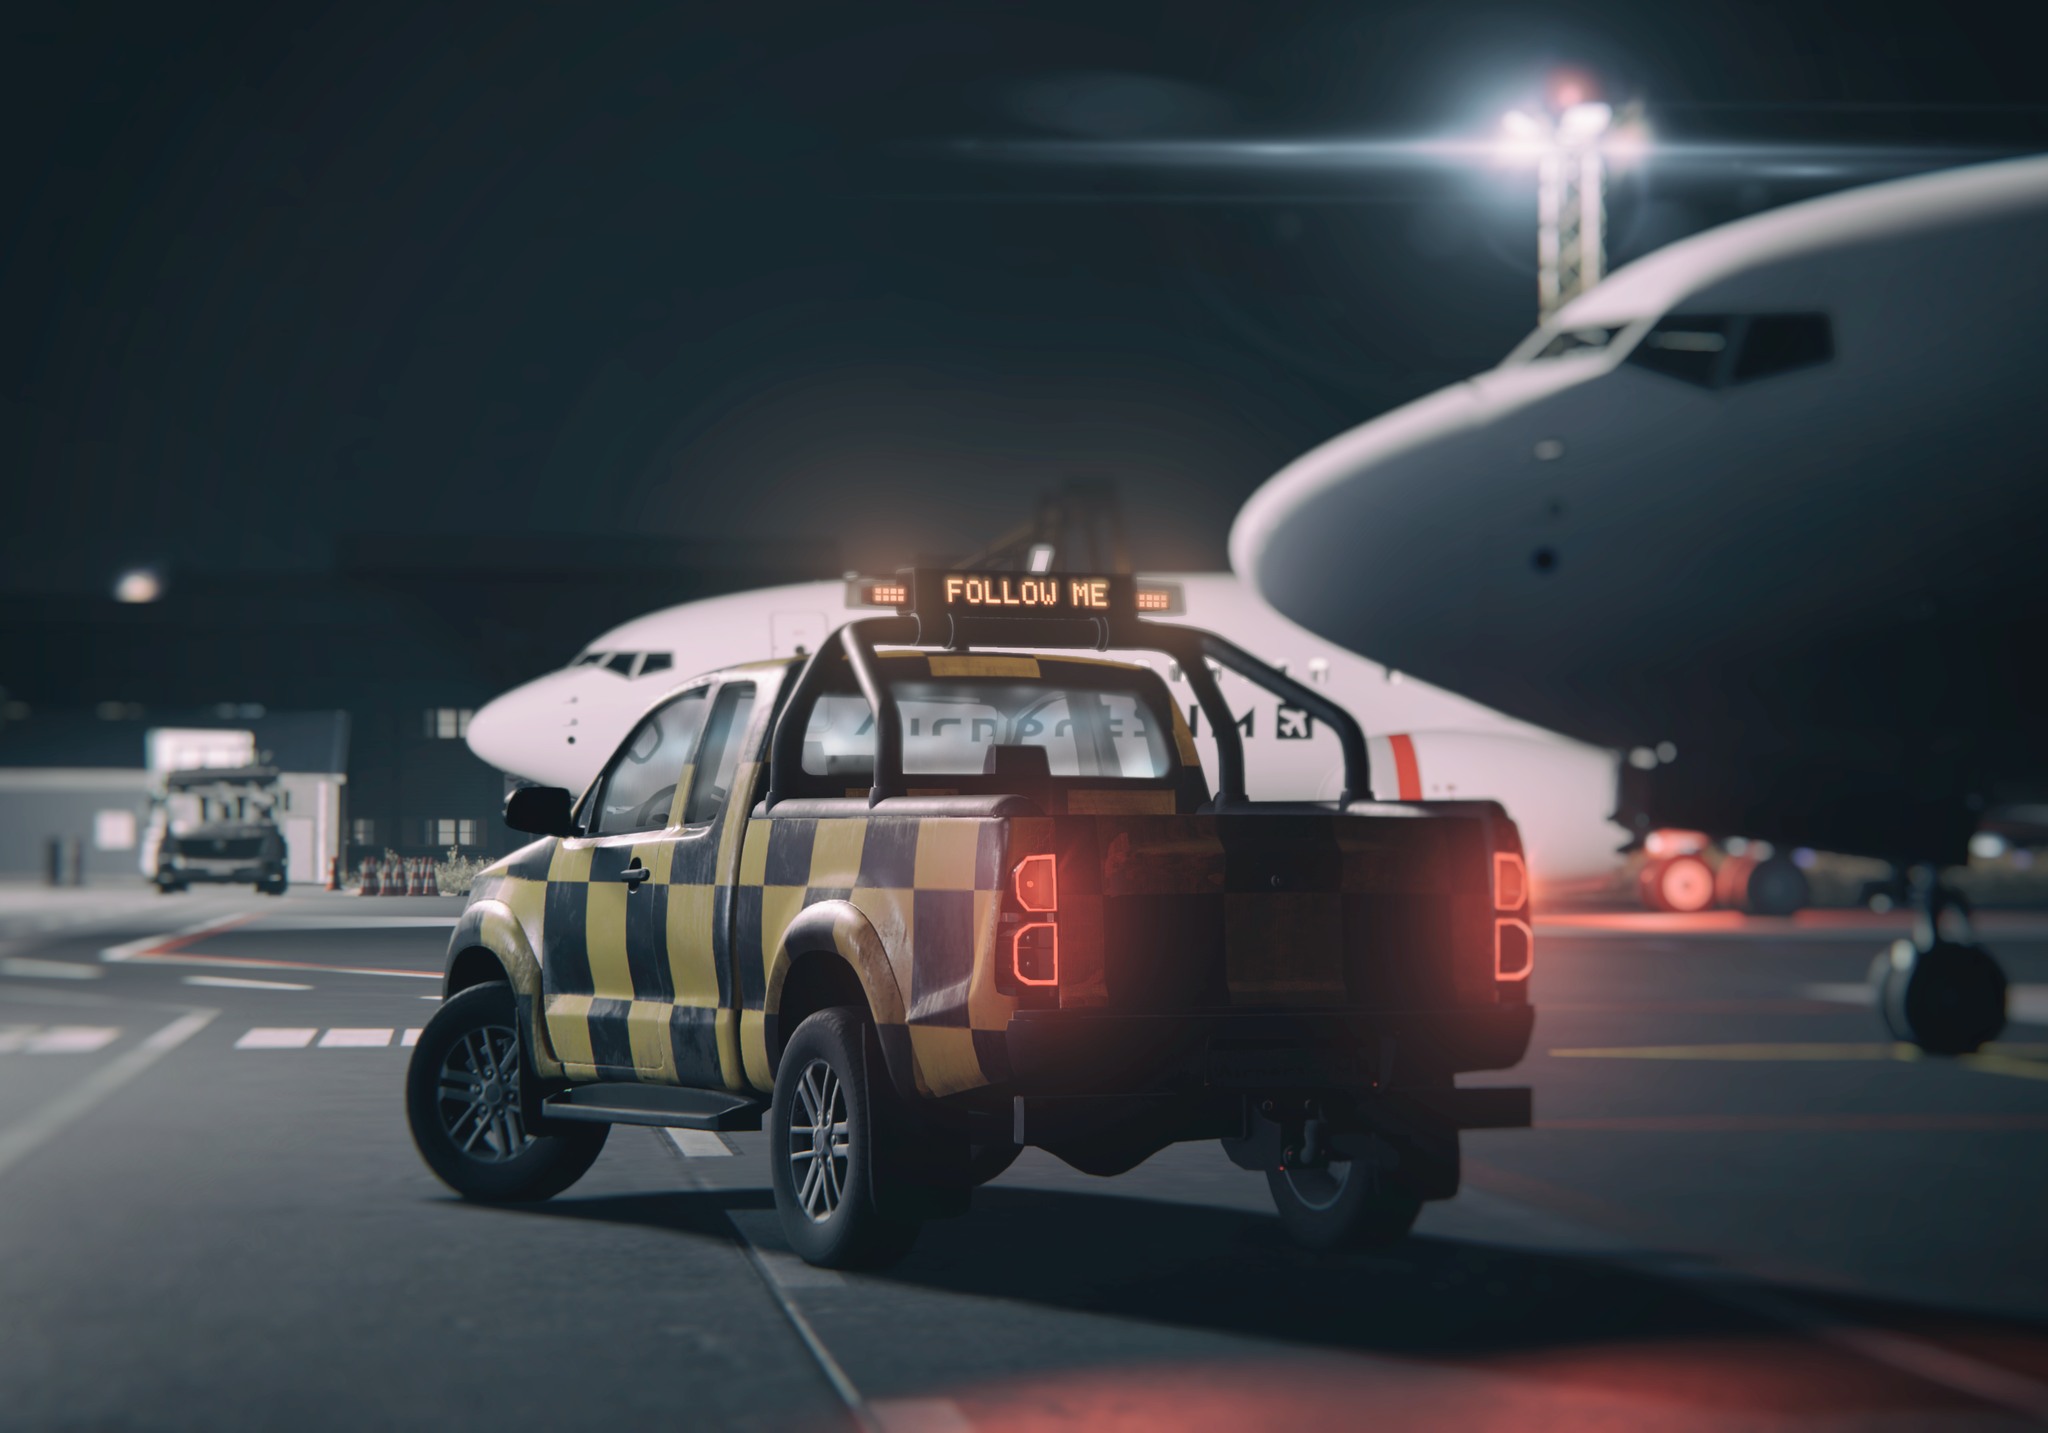 Airport Sim follow-me car in the game.